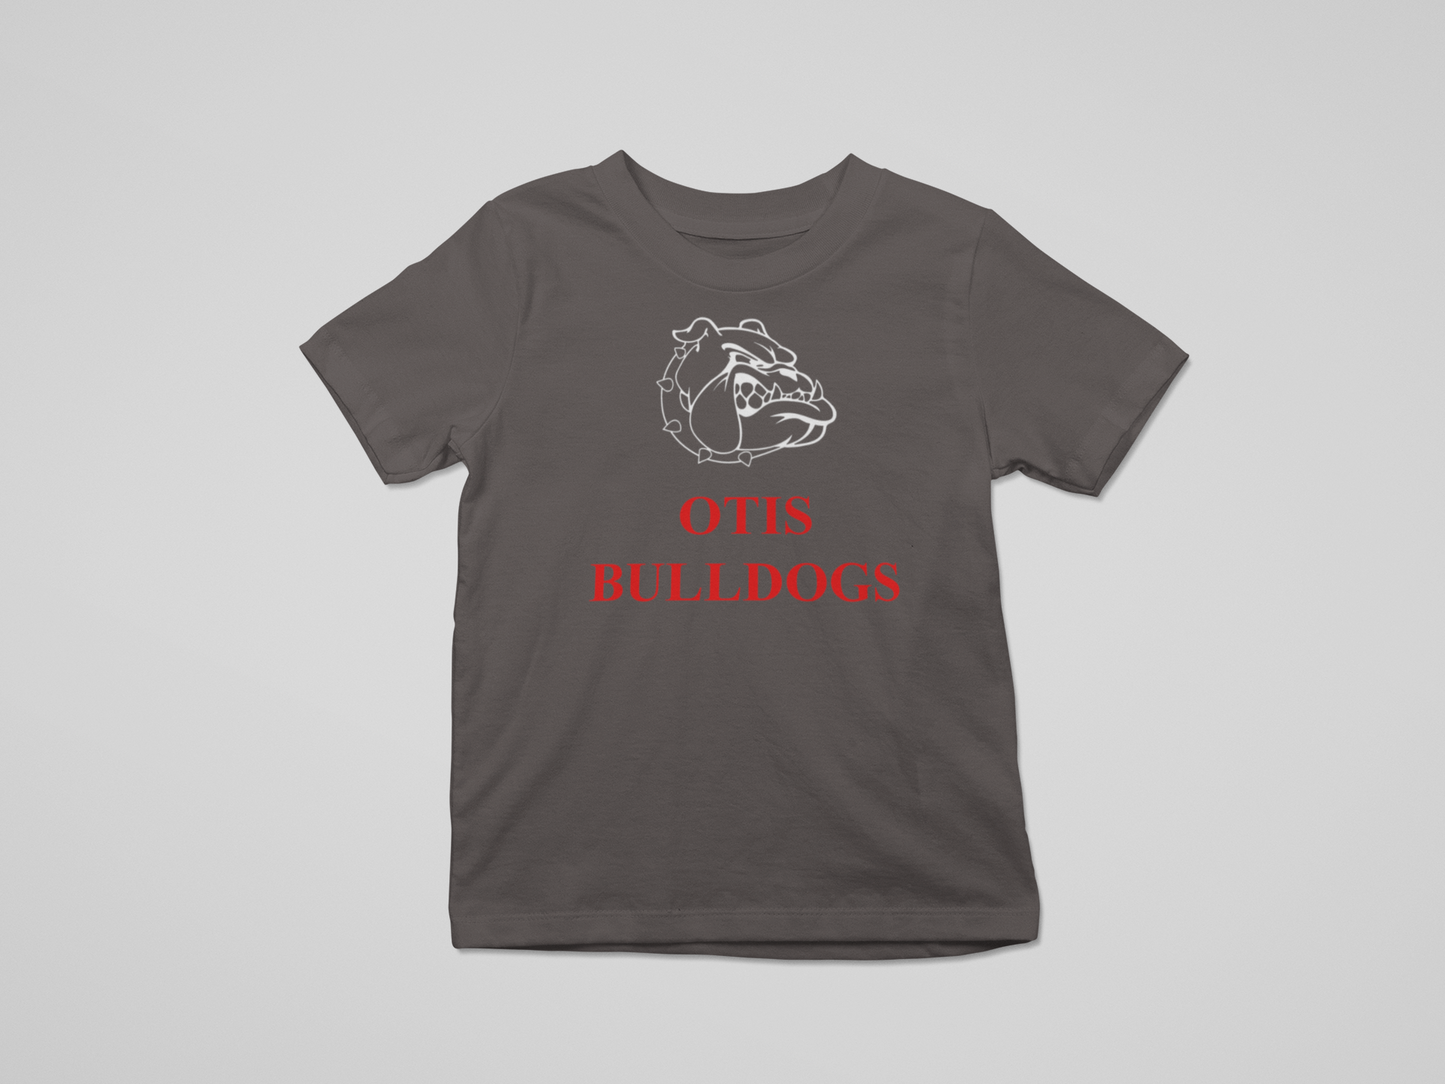 otis bulldogs infant t-shirt: for lil' otis bulldogs only!